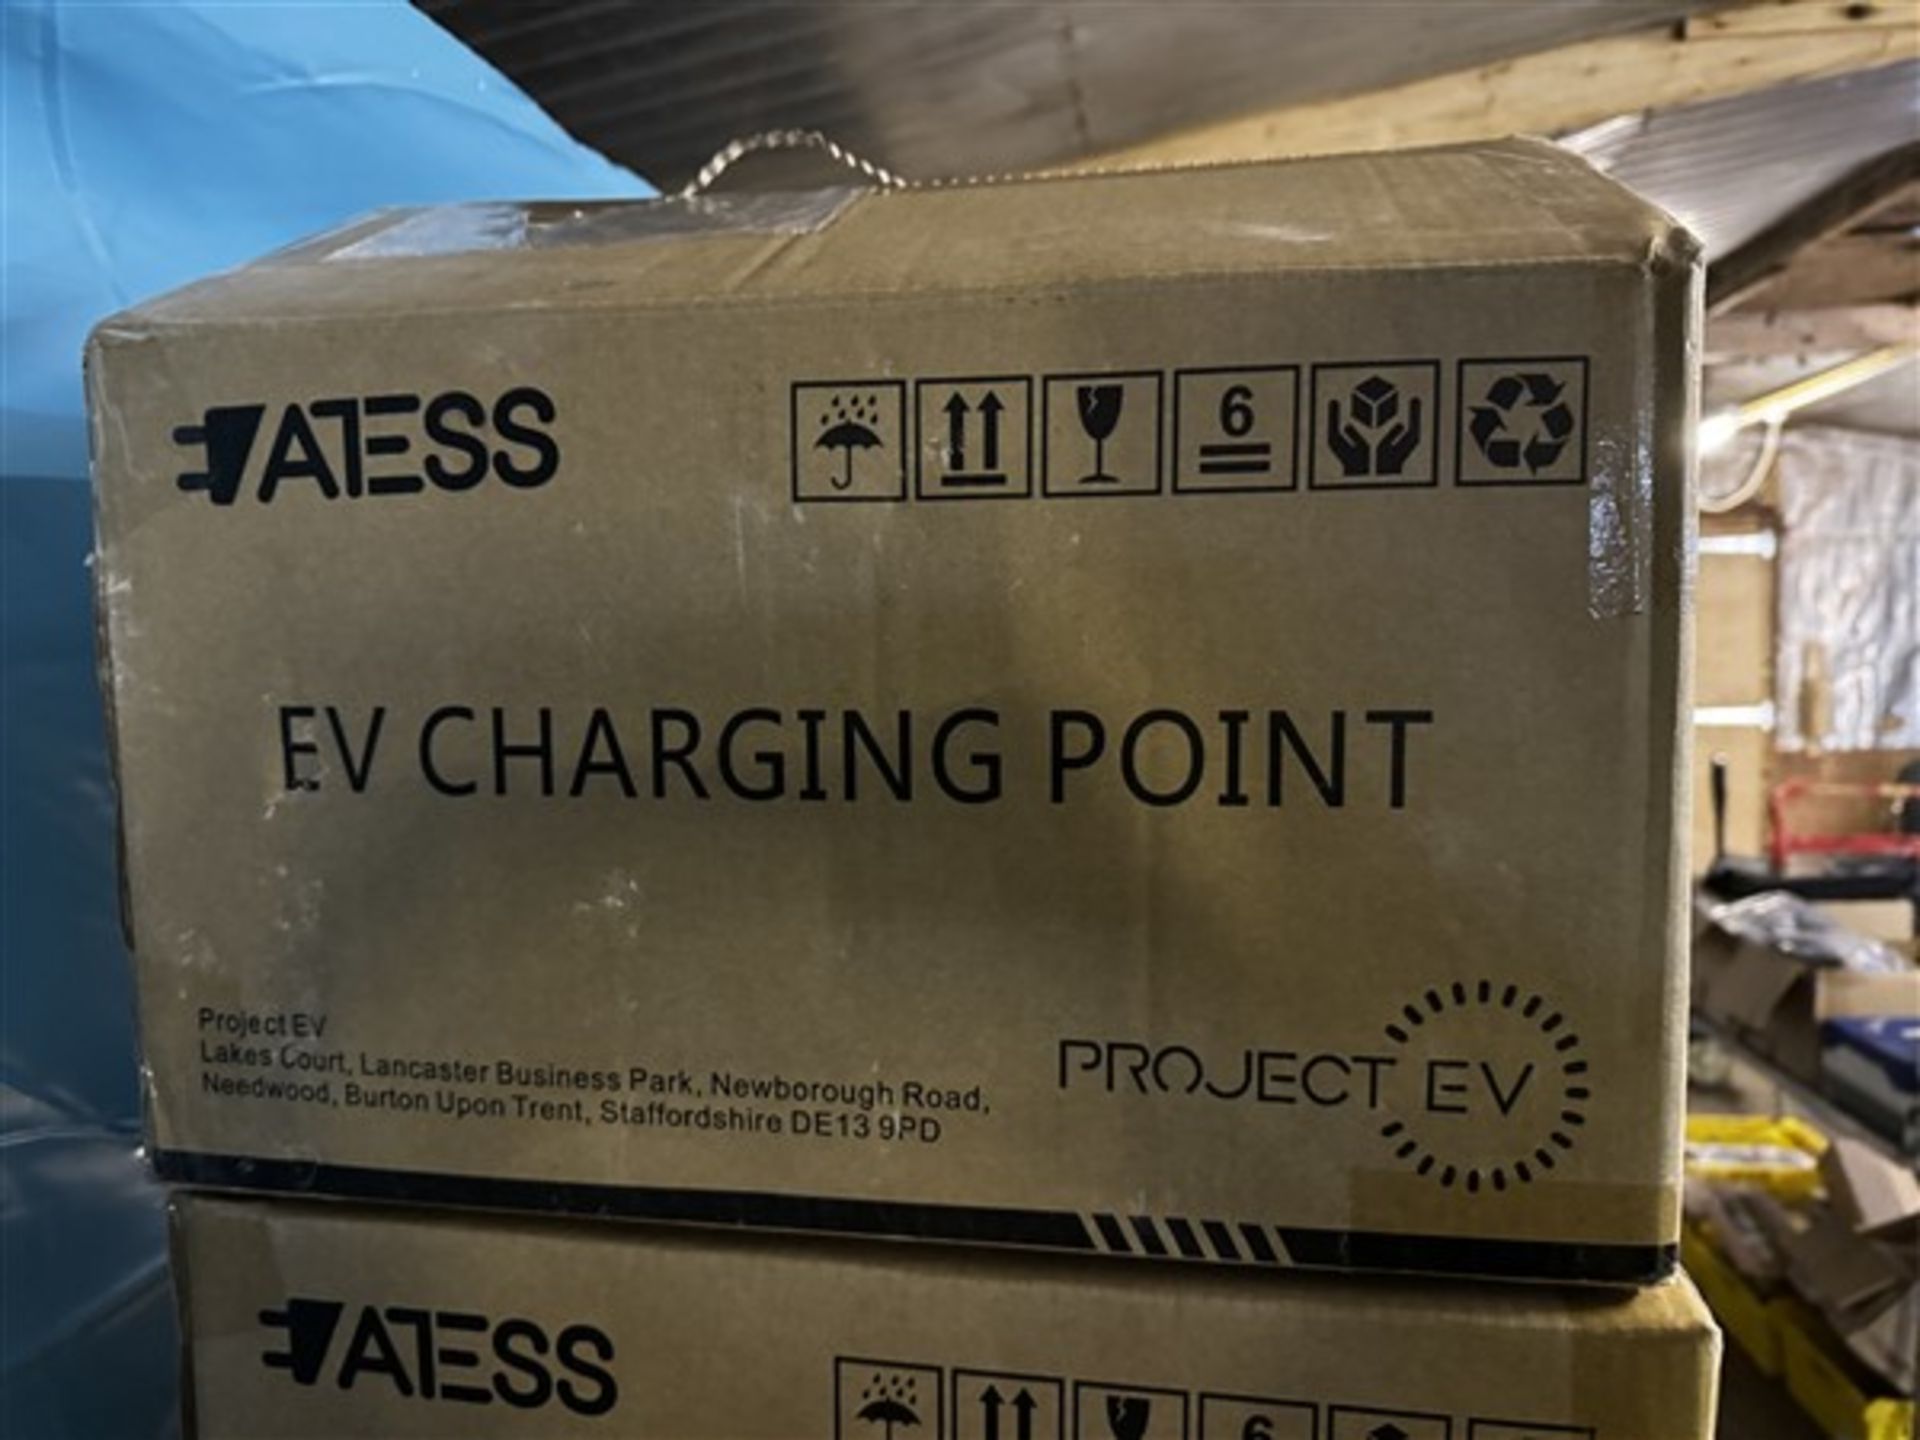 Project EV electric car charger, model EVA-075-SE, 240v (20231), serial no. KPGOB298ED - Image 2 of 4